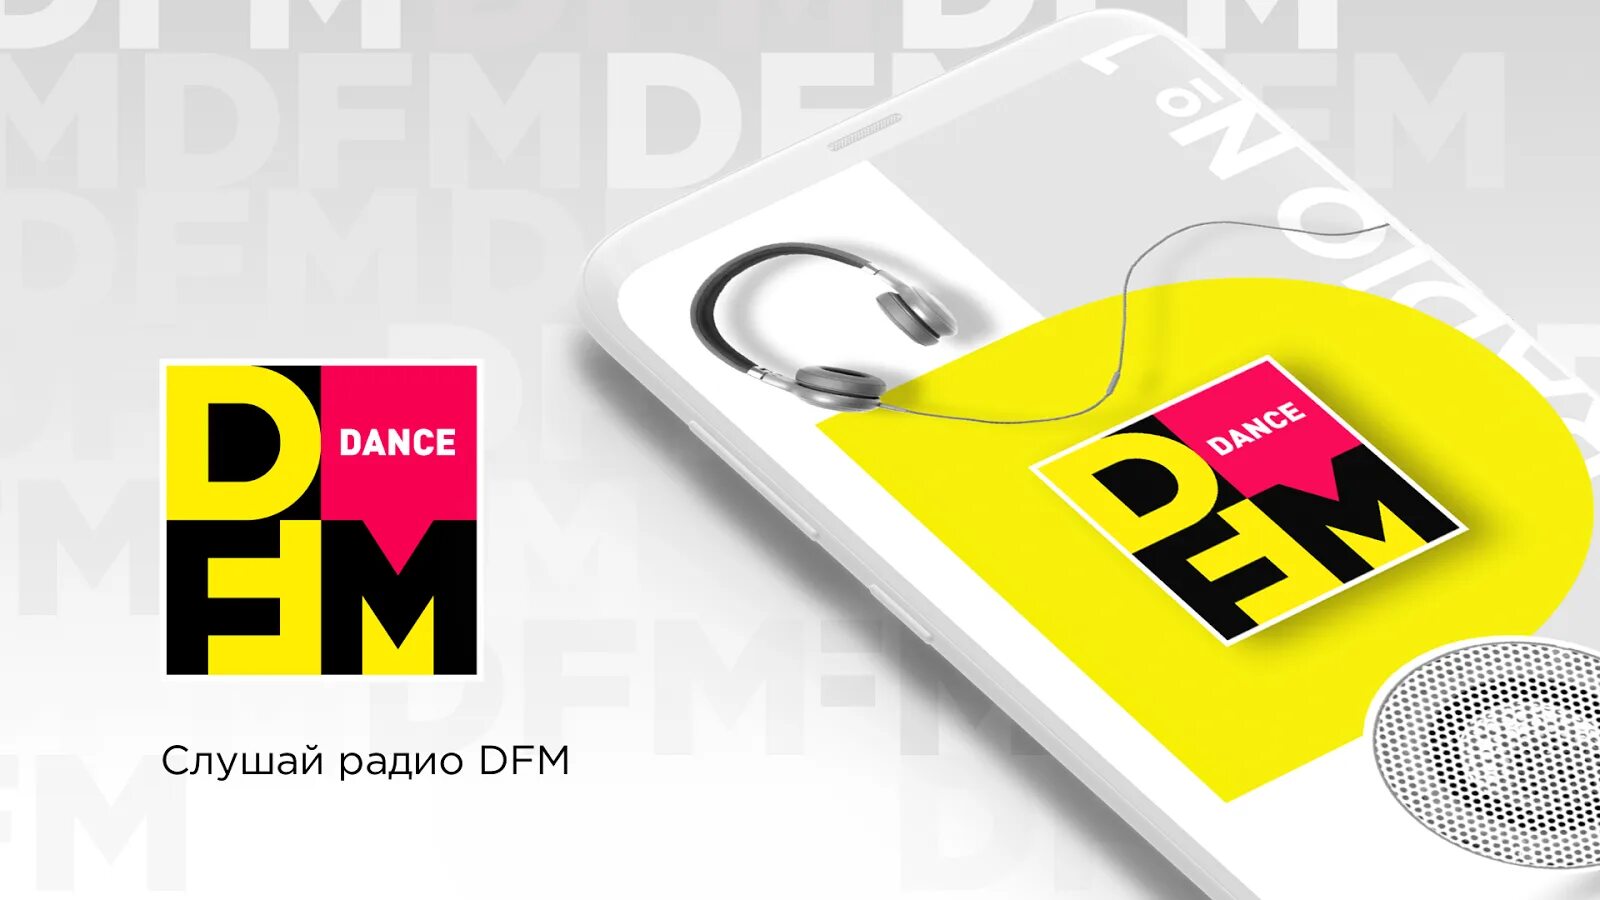 DFM. DFM радио. Сайт радиостанции DFM. Логотип ди ФМ. Прямой эфир радио ди фм